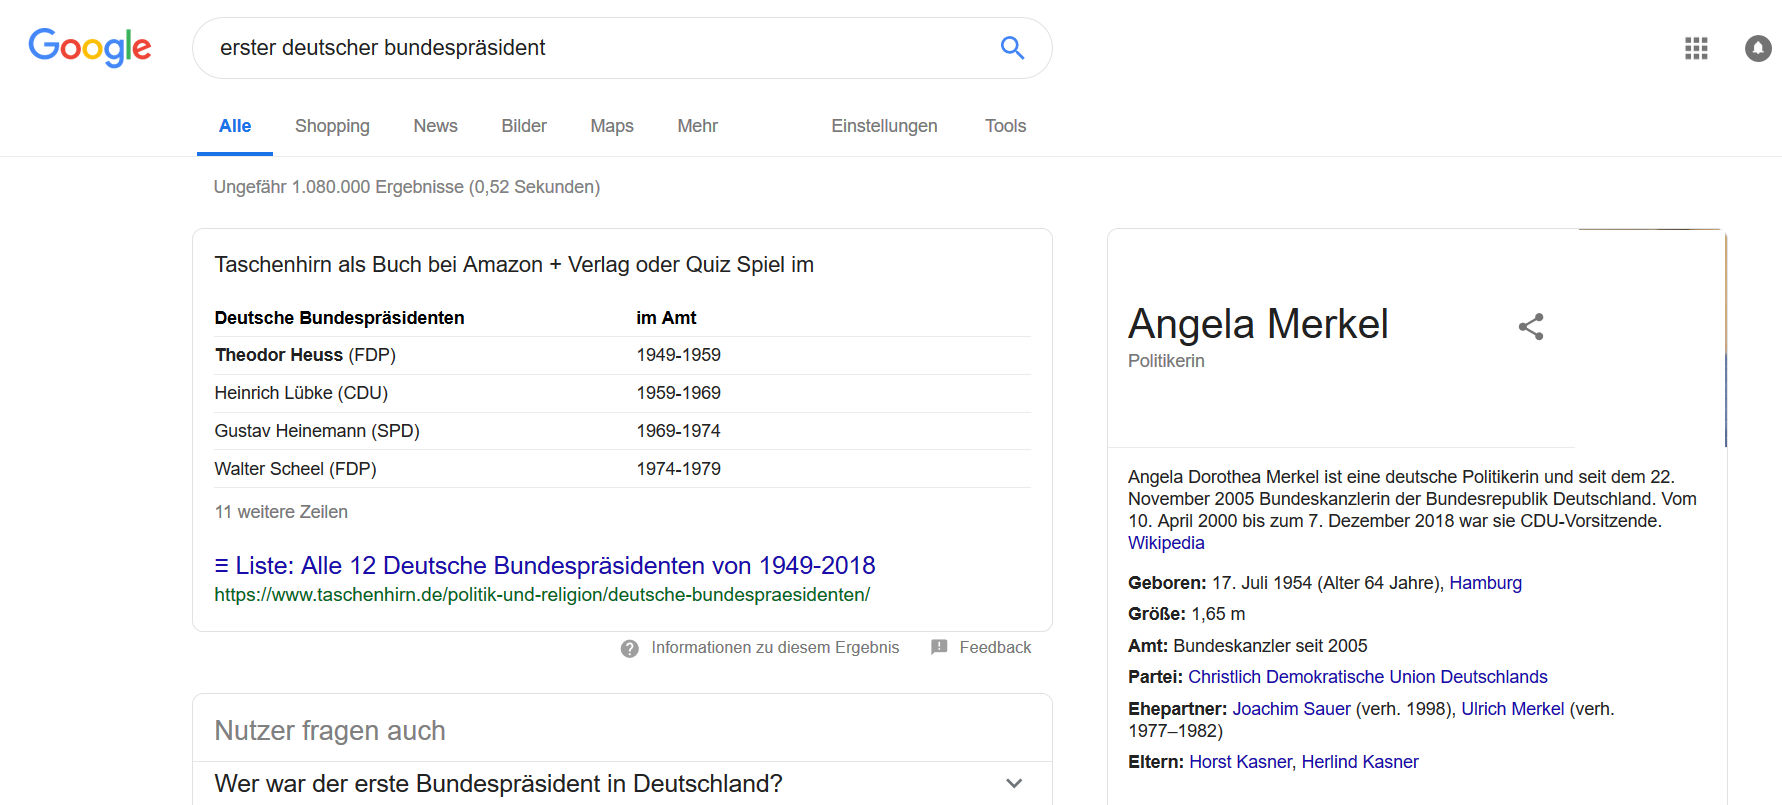 Google: manipulierte Suchergebnisseite mit falschem Knowledge Panel